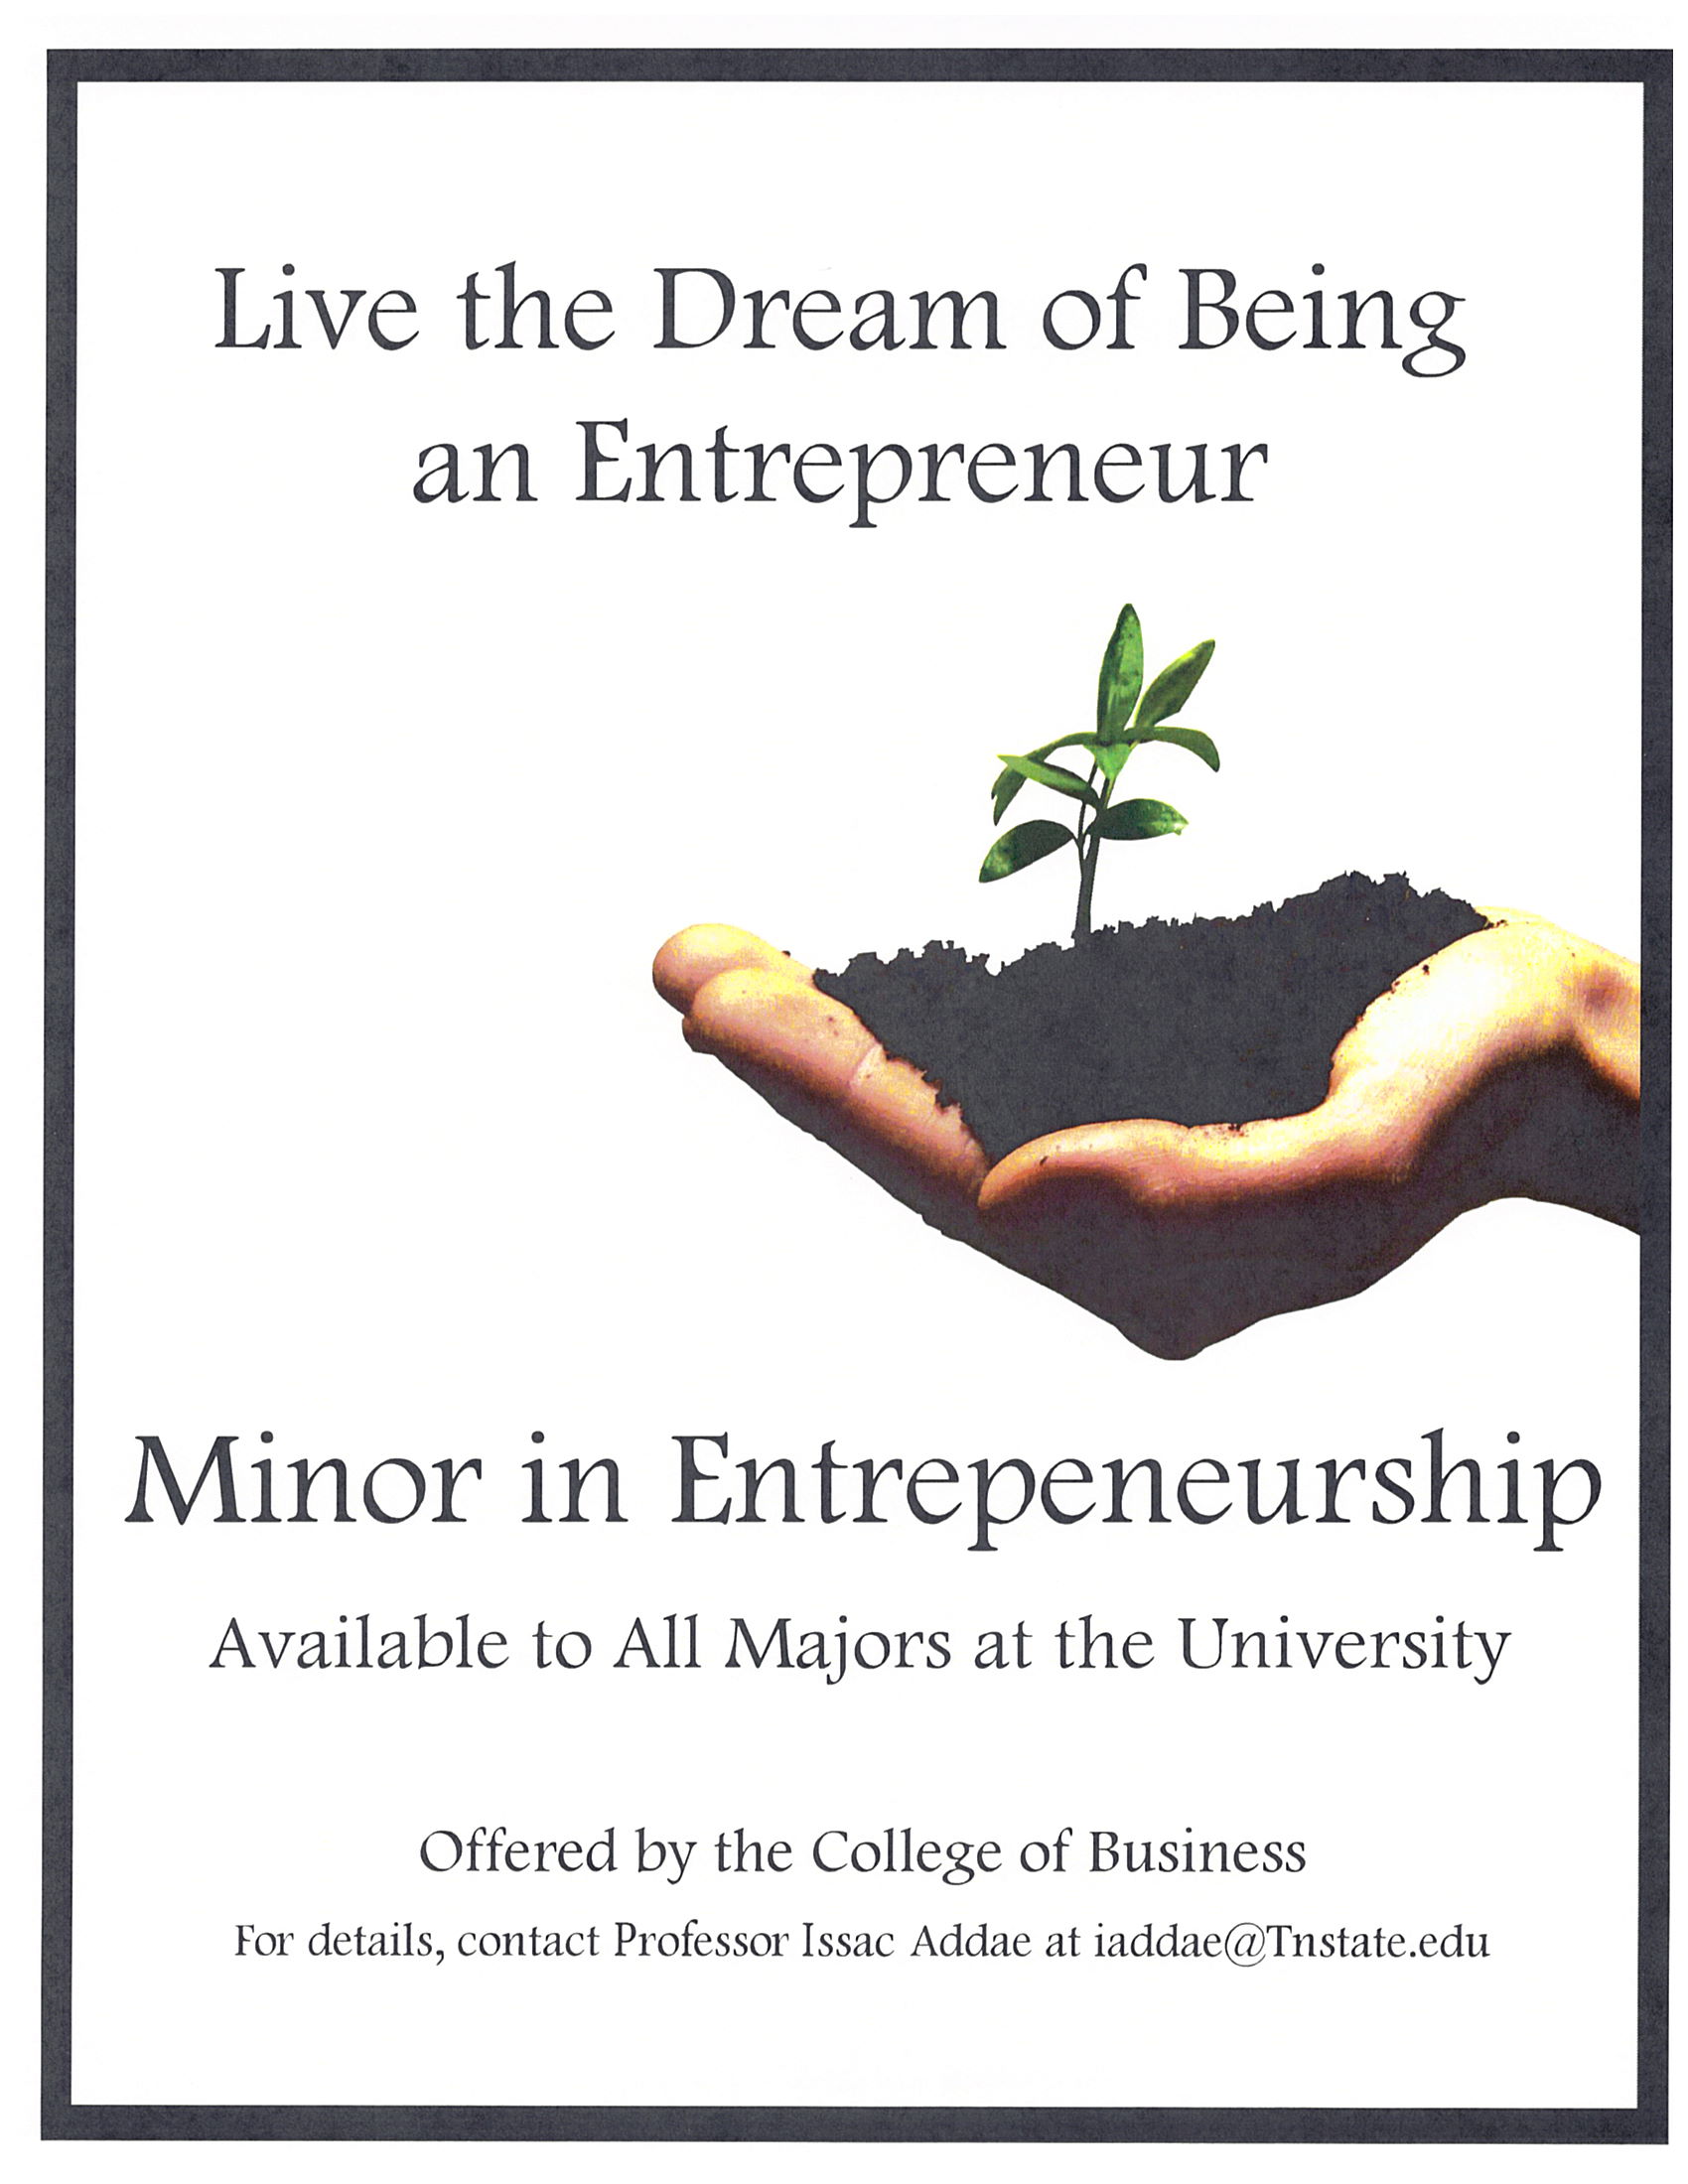 Entrepreneuralship